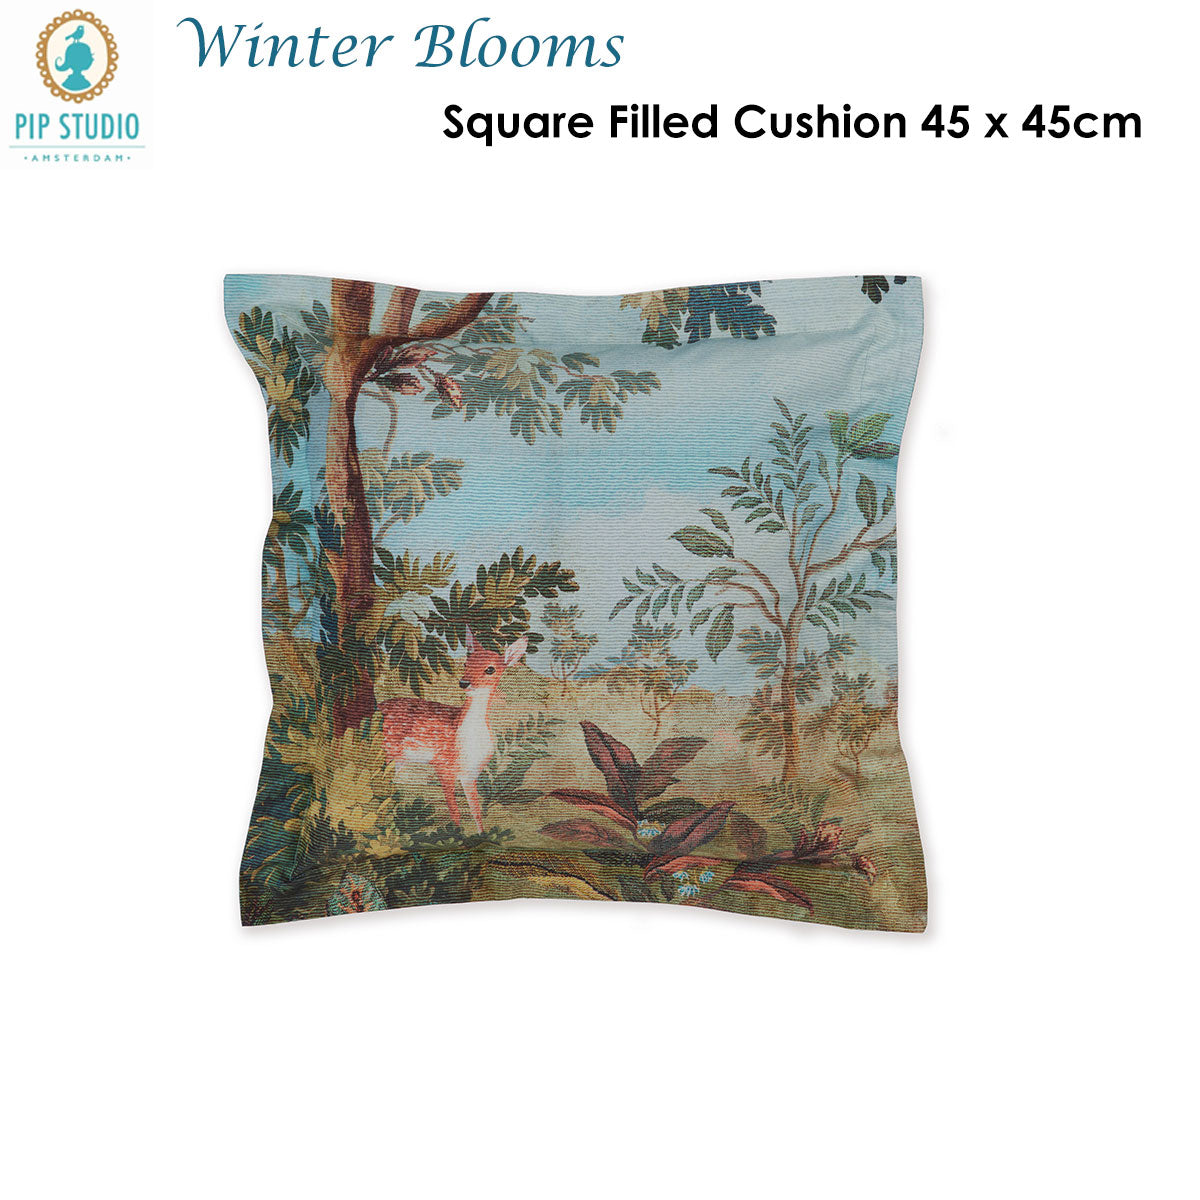 PIP Studio Winter Blooms Multi Cotton Cover Square Cushion